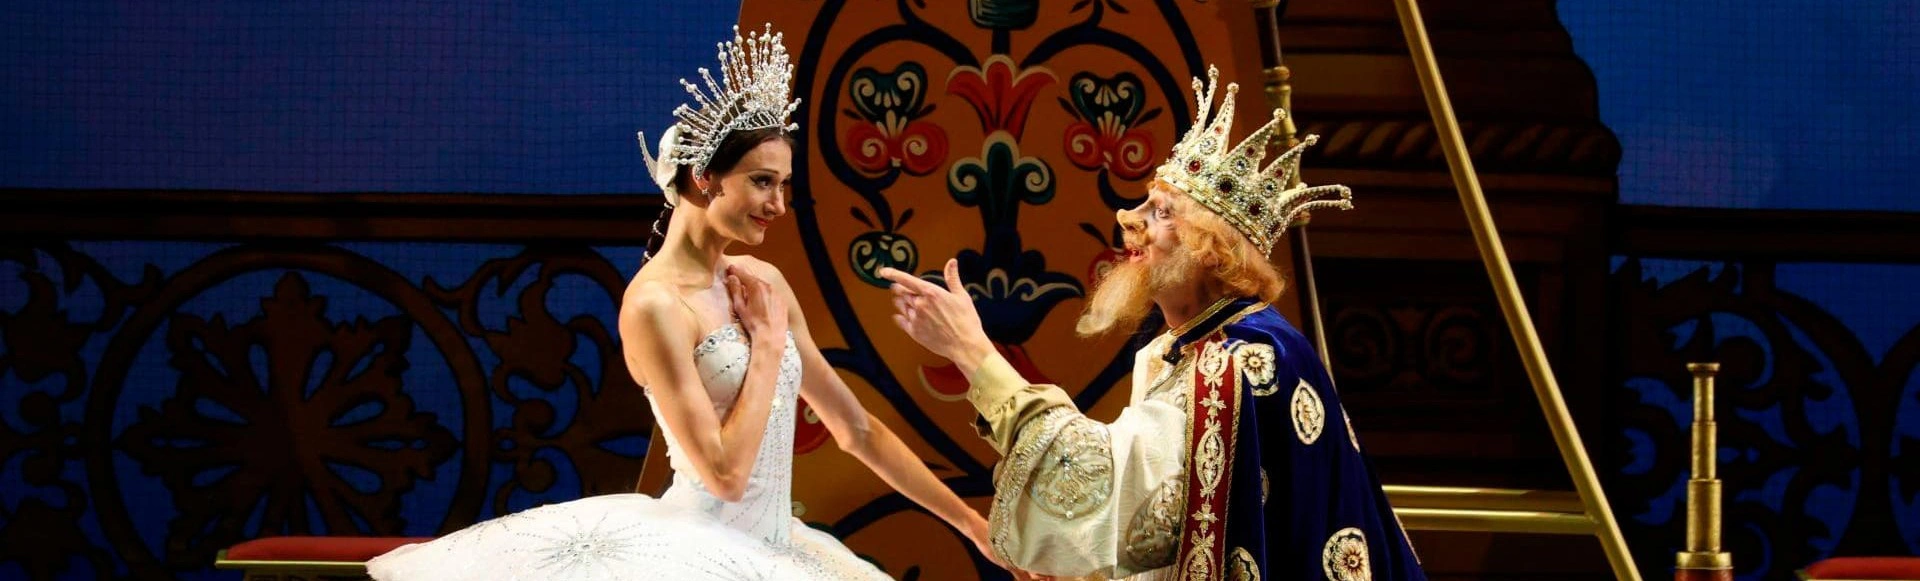 Балет «Конек-Горбунок» на сцене Михайловского театра